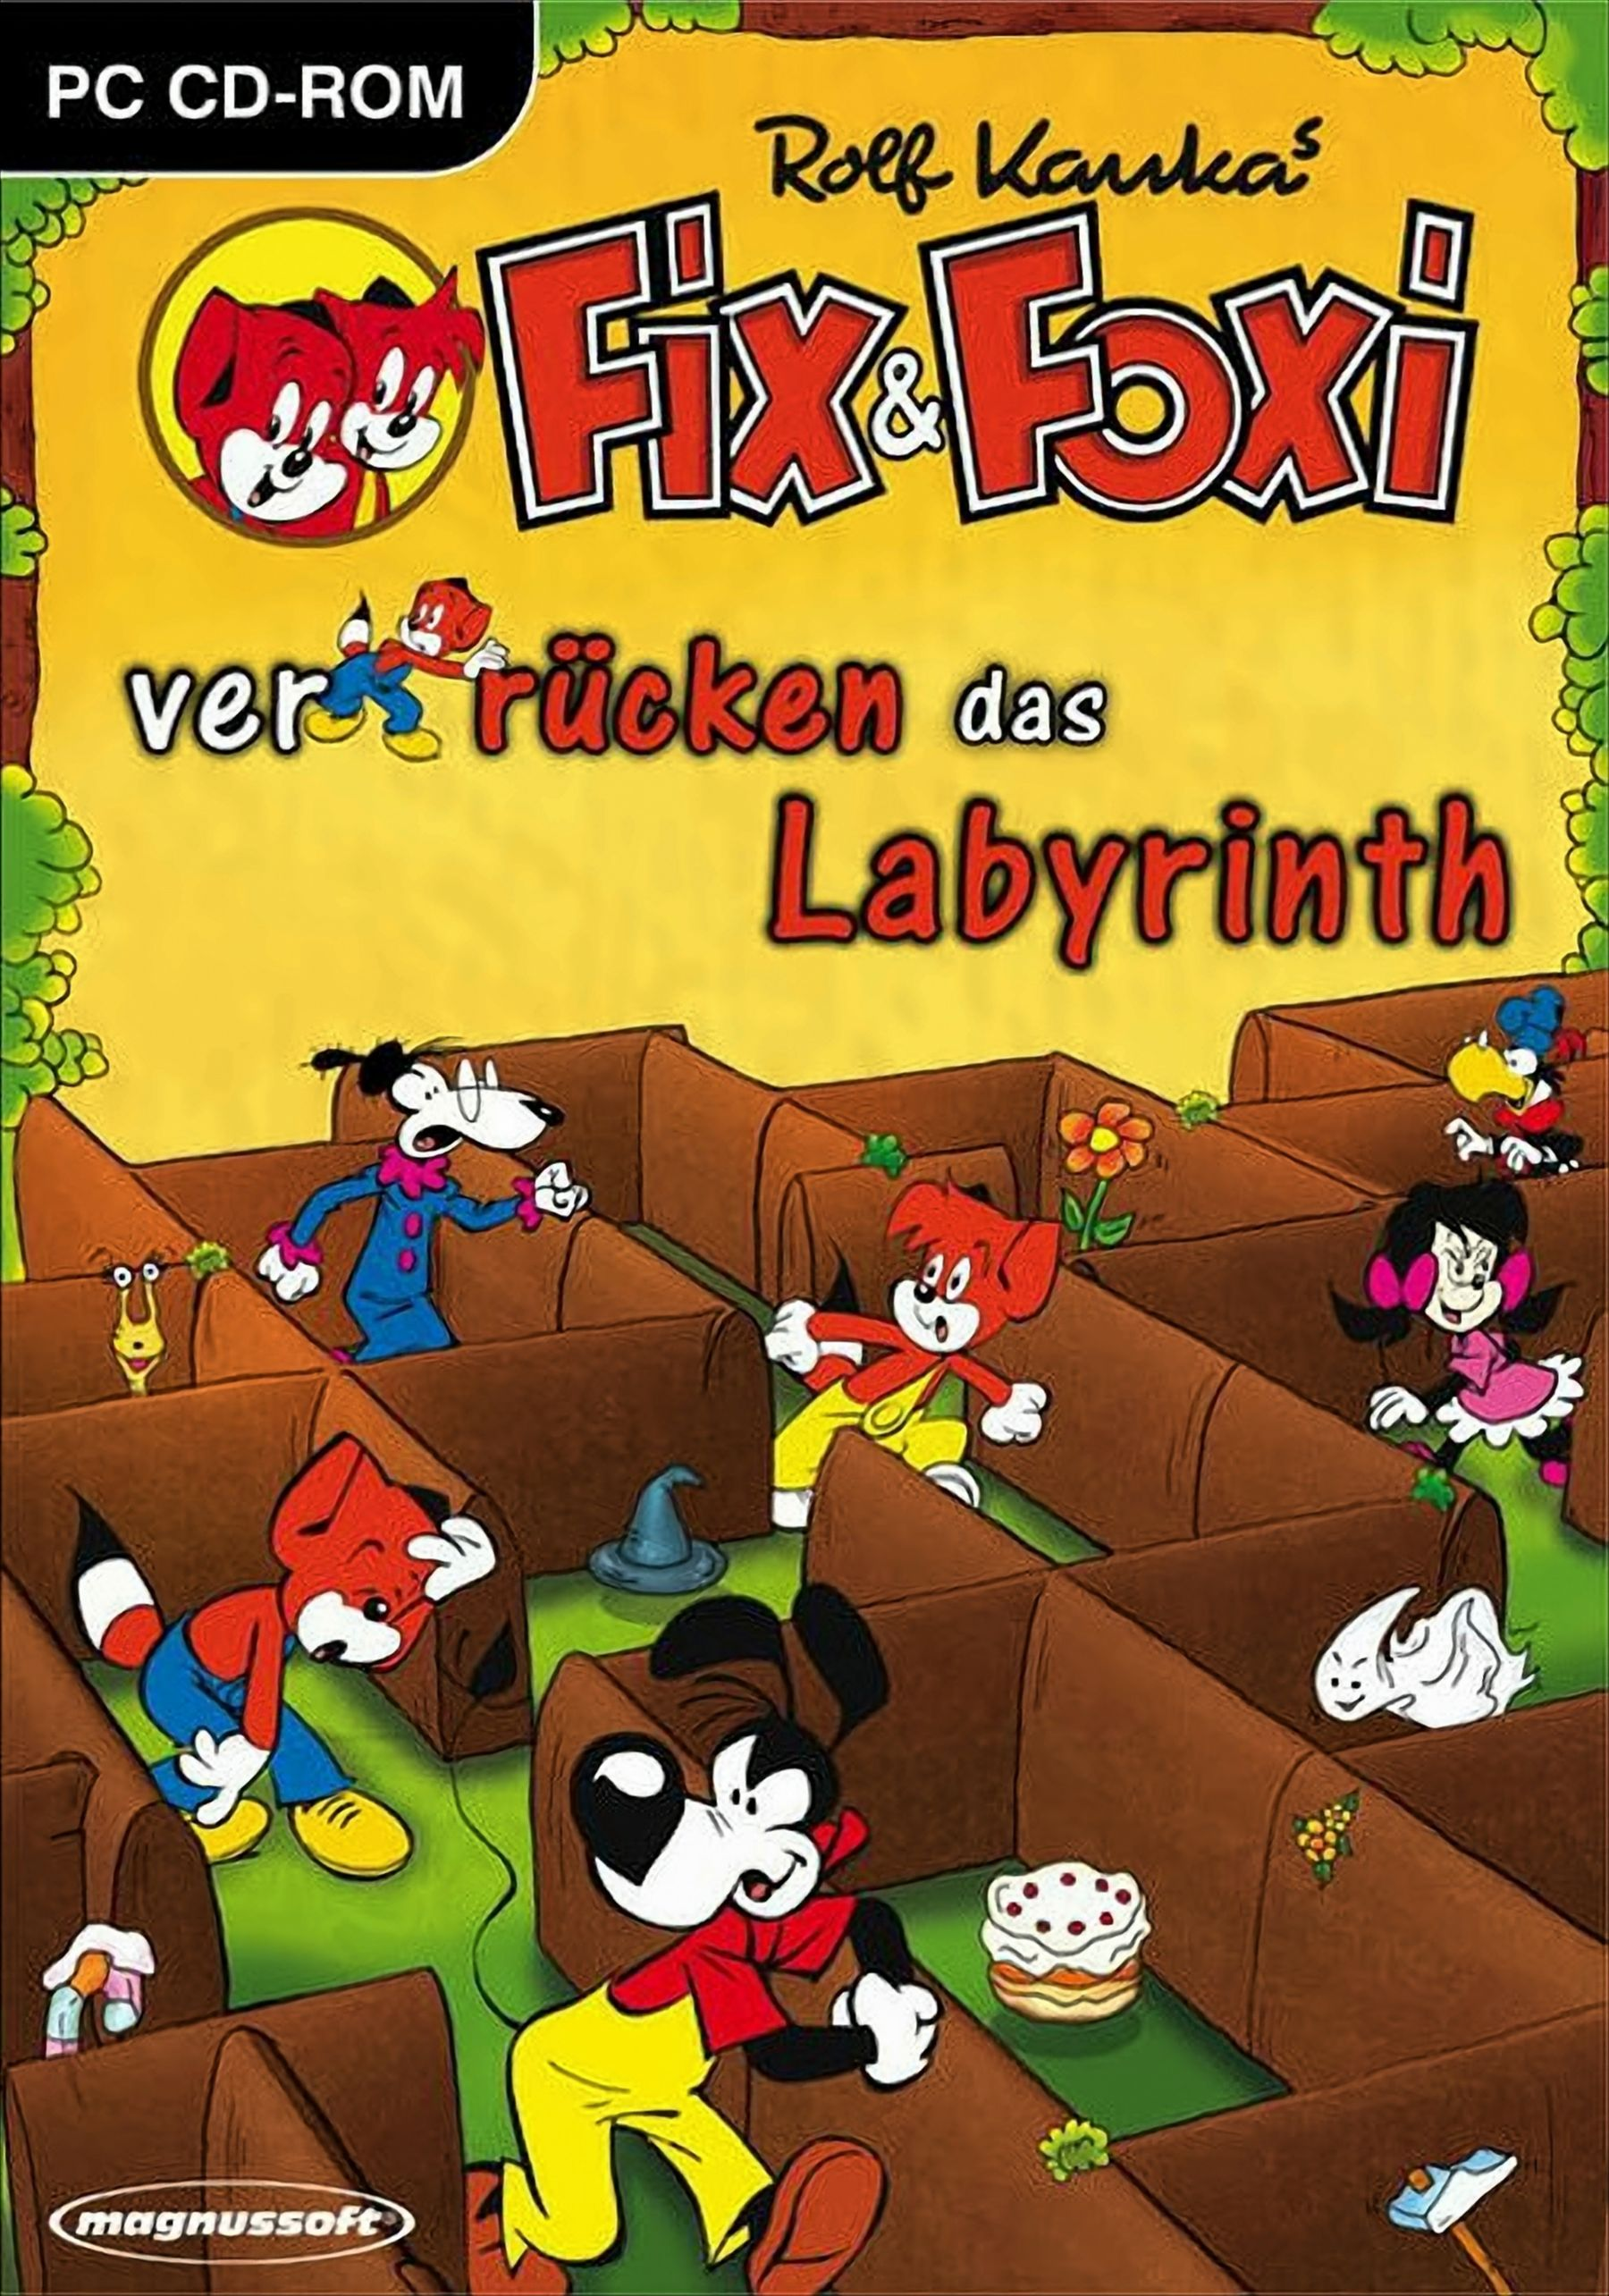 Fix & Foxi verrücken - Labyrinth [PC] das